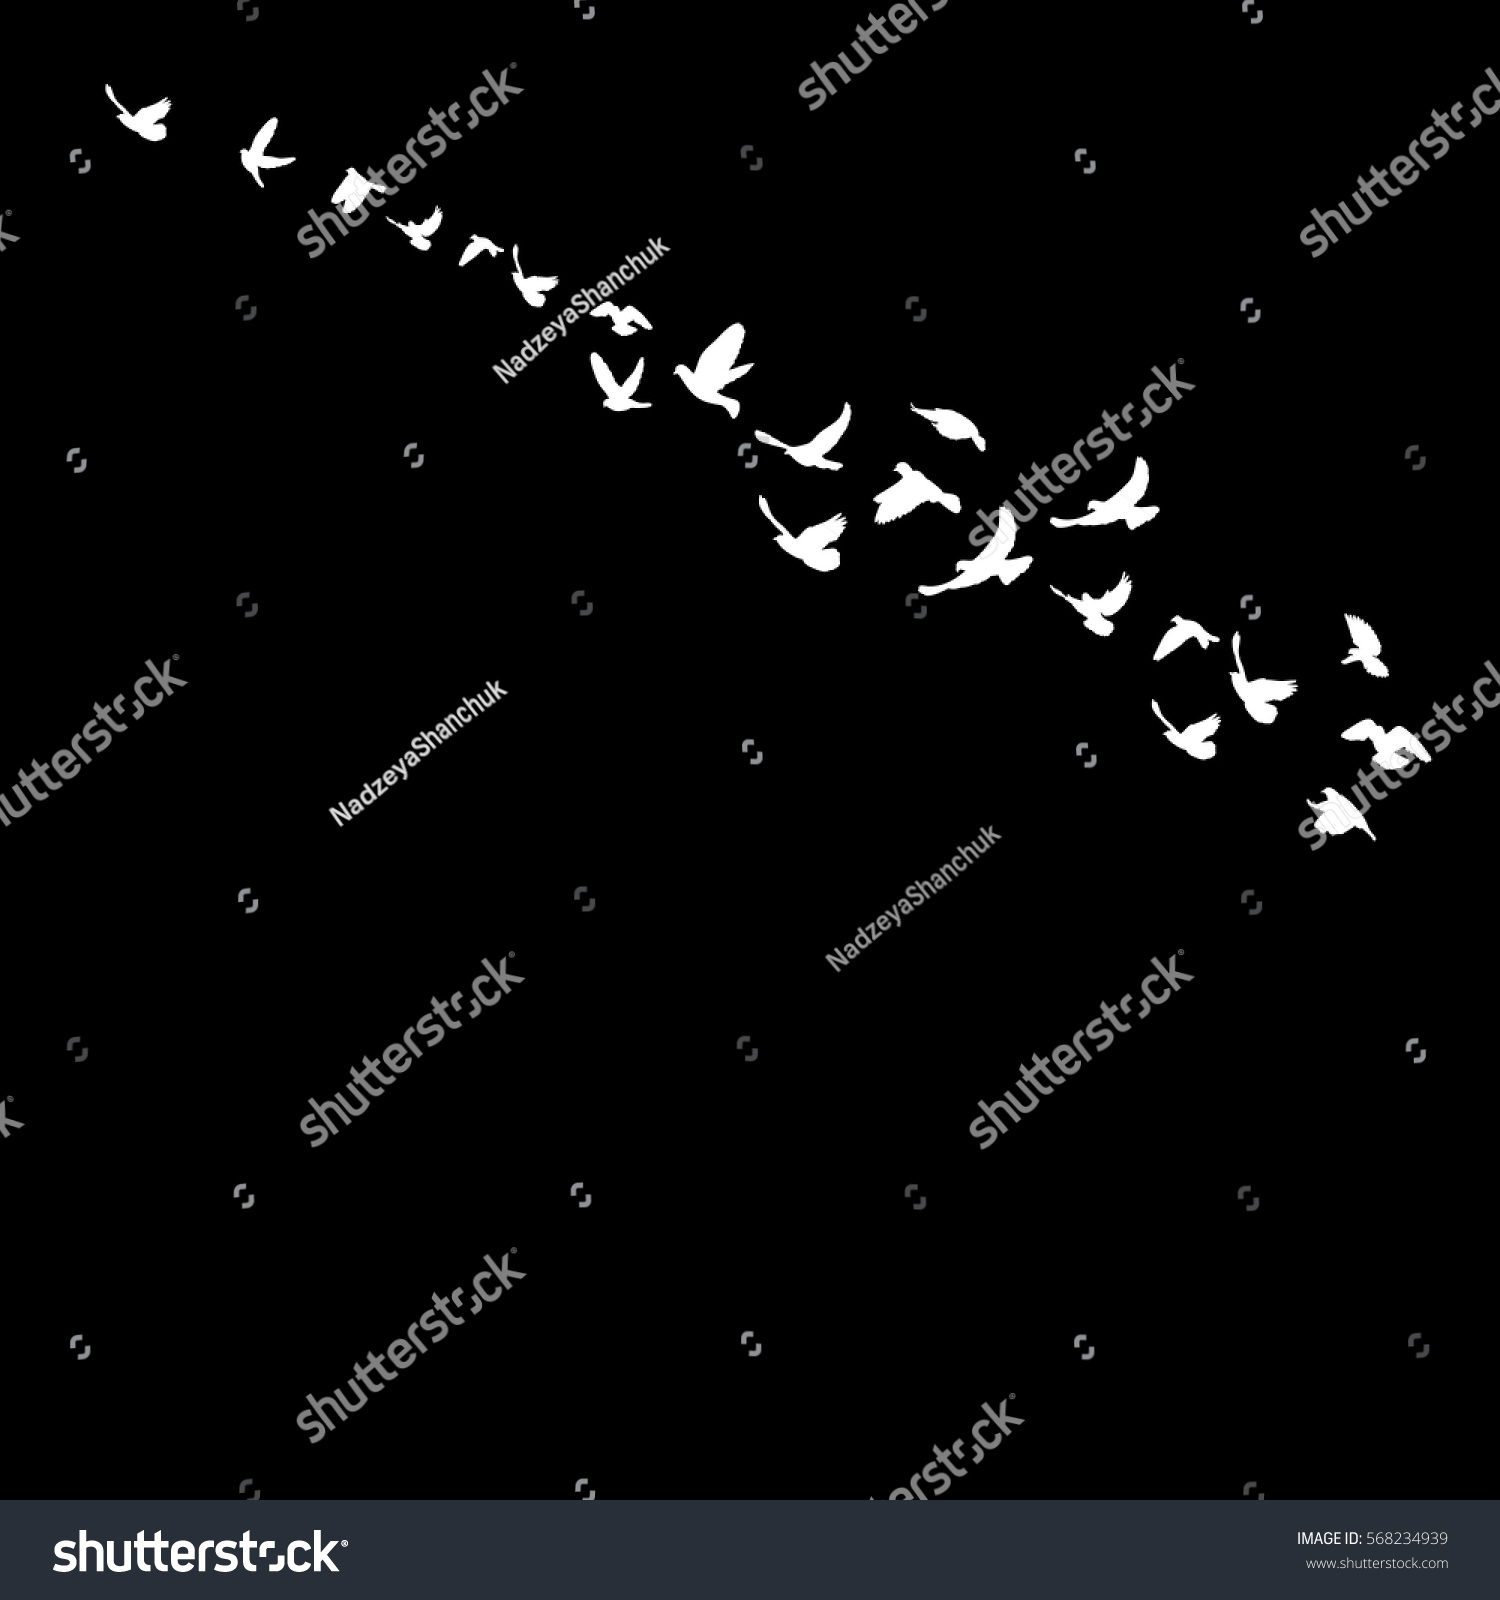 White Silhouette Flying Birds Stock Vector 568234939 - Shutterstock